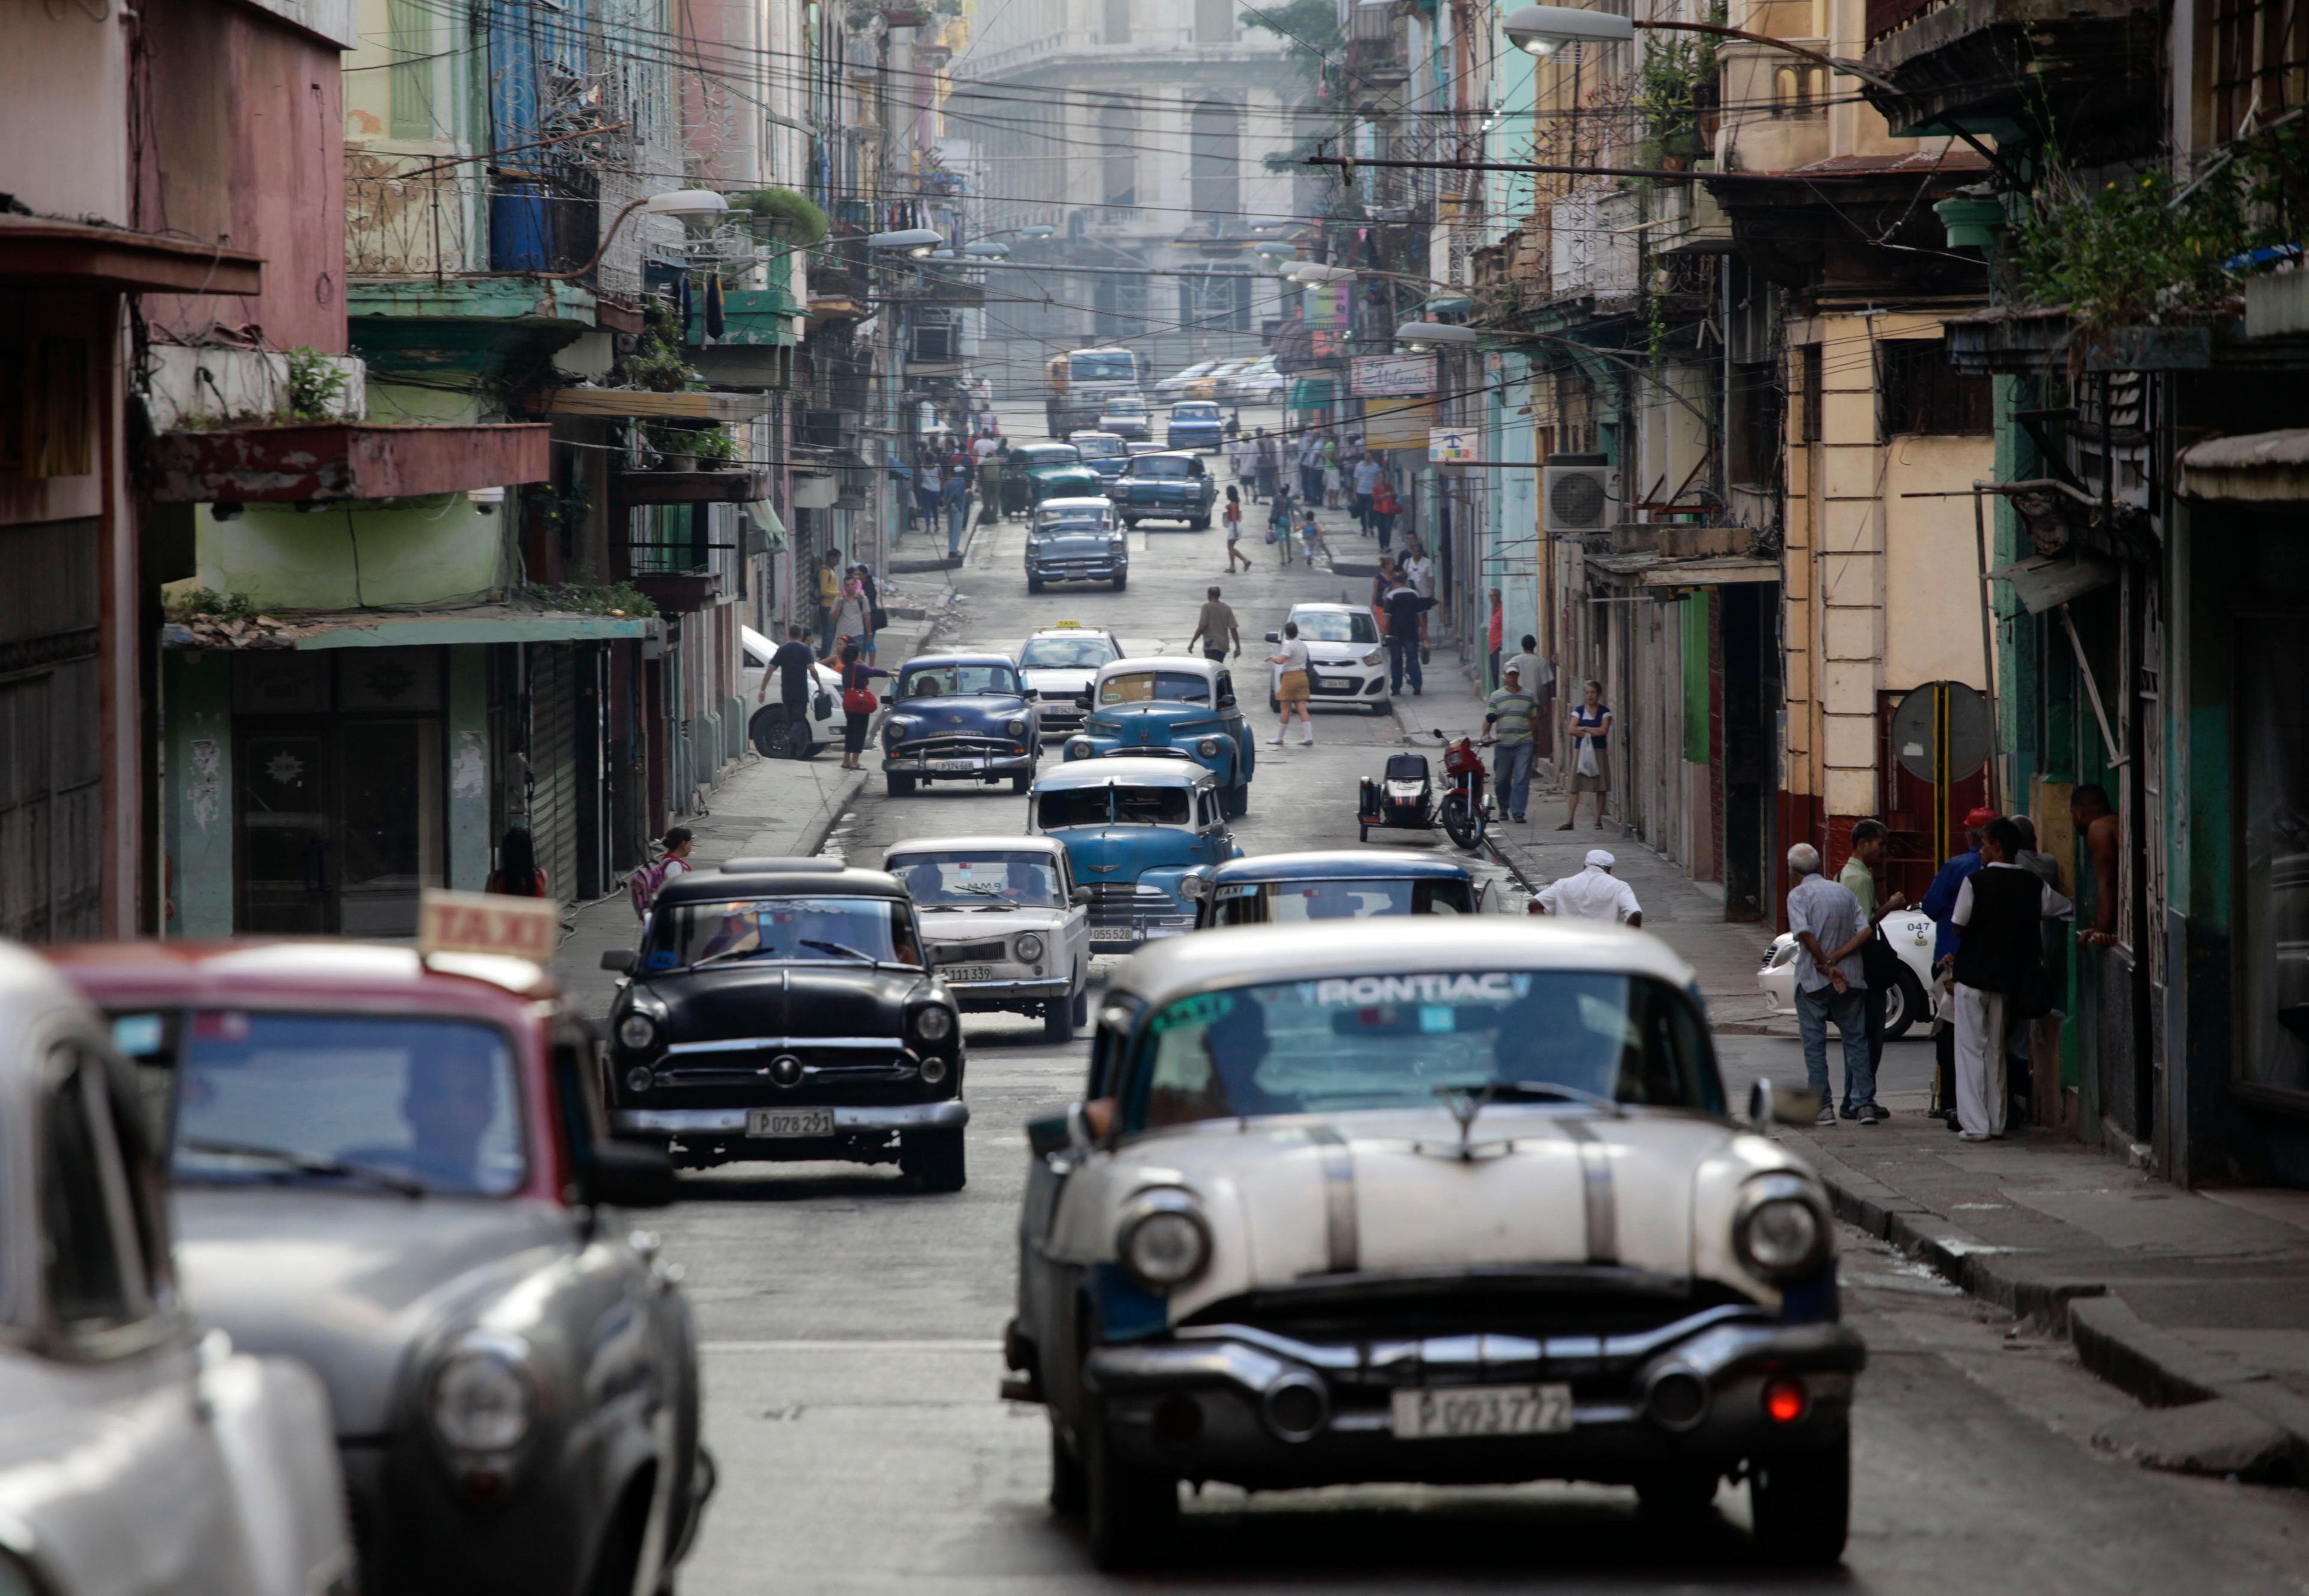 Autos clásicos americanos utilizados como taxis colectivos circulan por una calle de La Habana. (Foto AP/Desmond Boylan/Archivo)